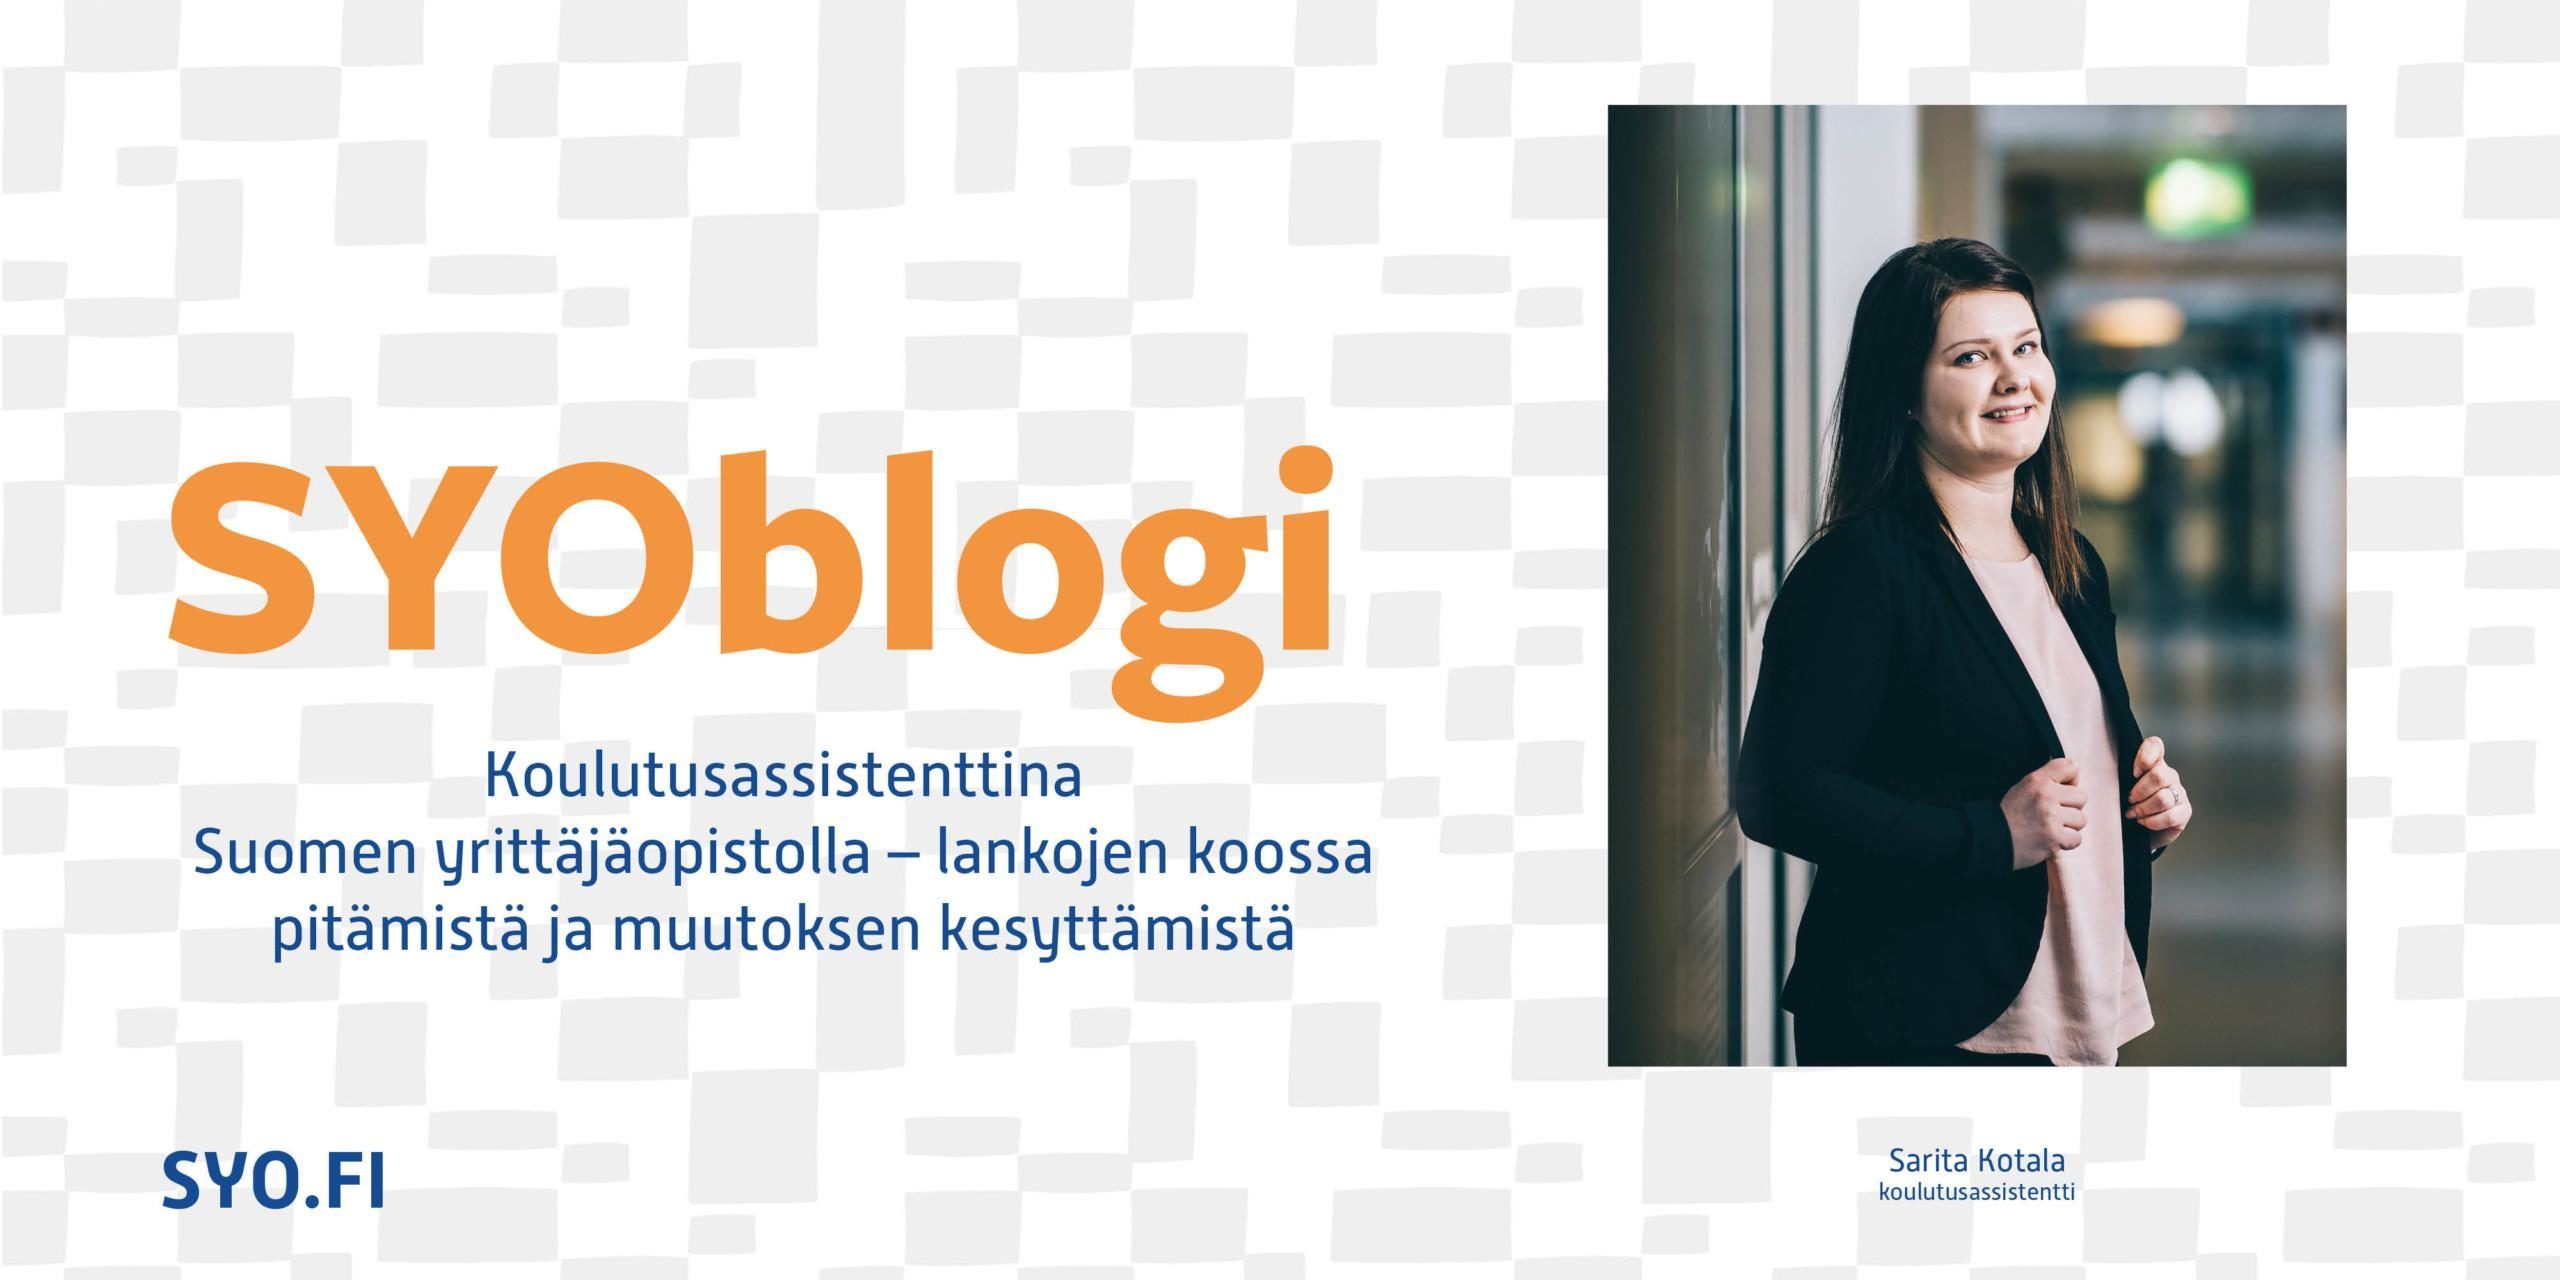 Sarita Kotala kirjoittaa SYOblogissa työskentelystään Suomen Yrittäjäopistolla.